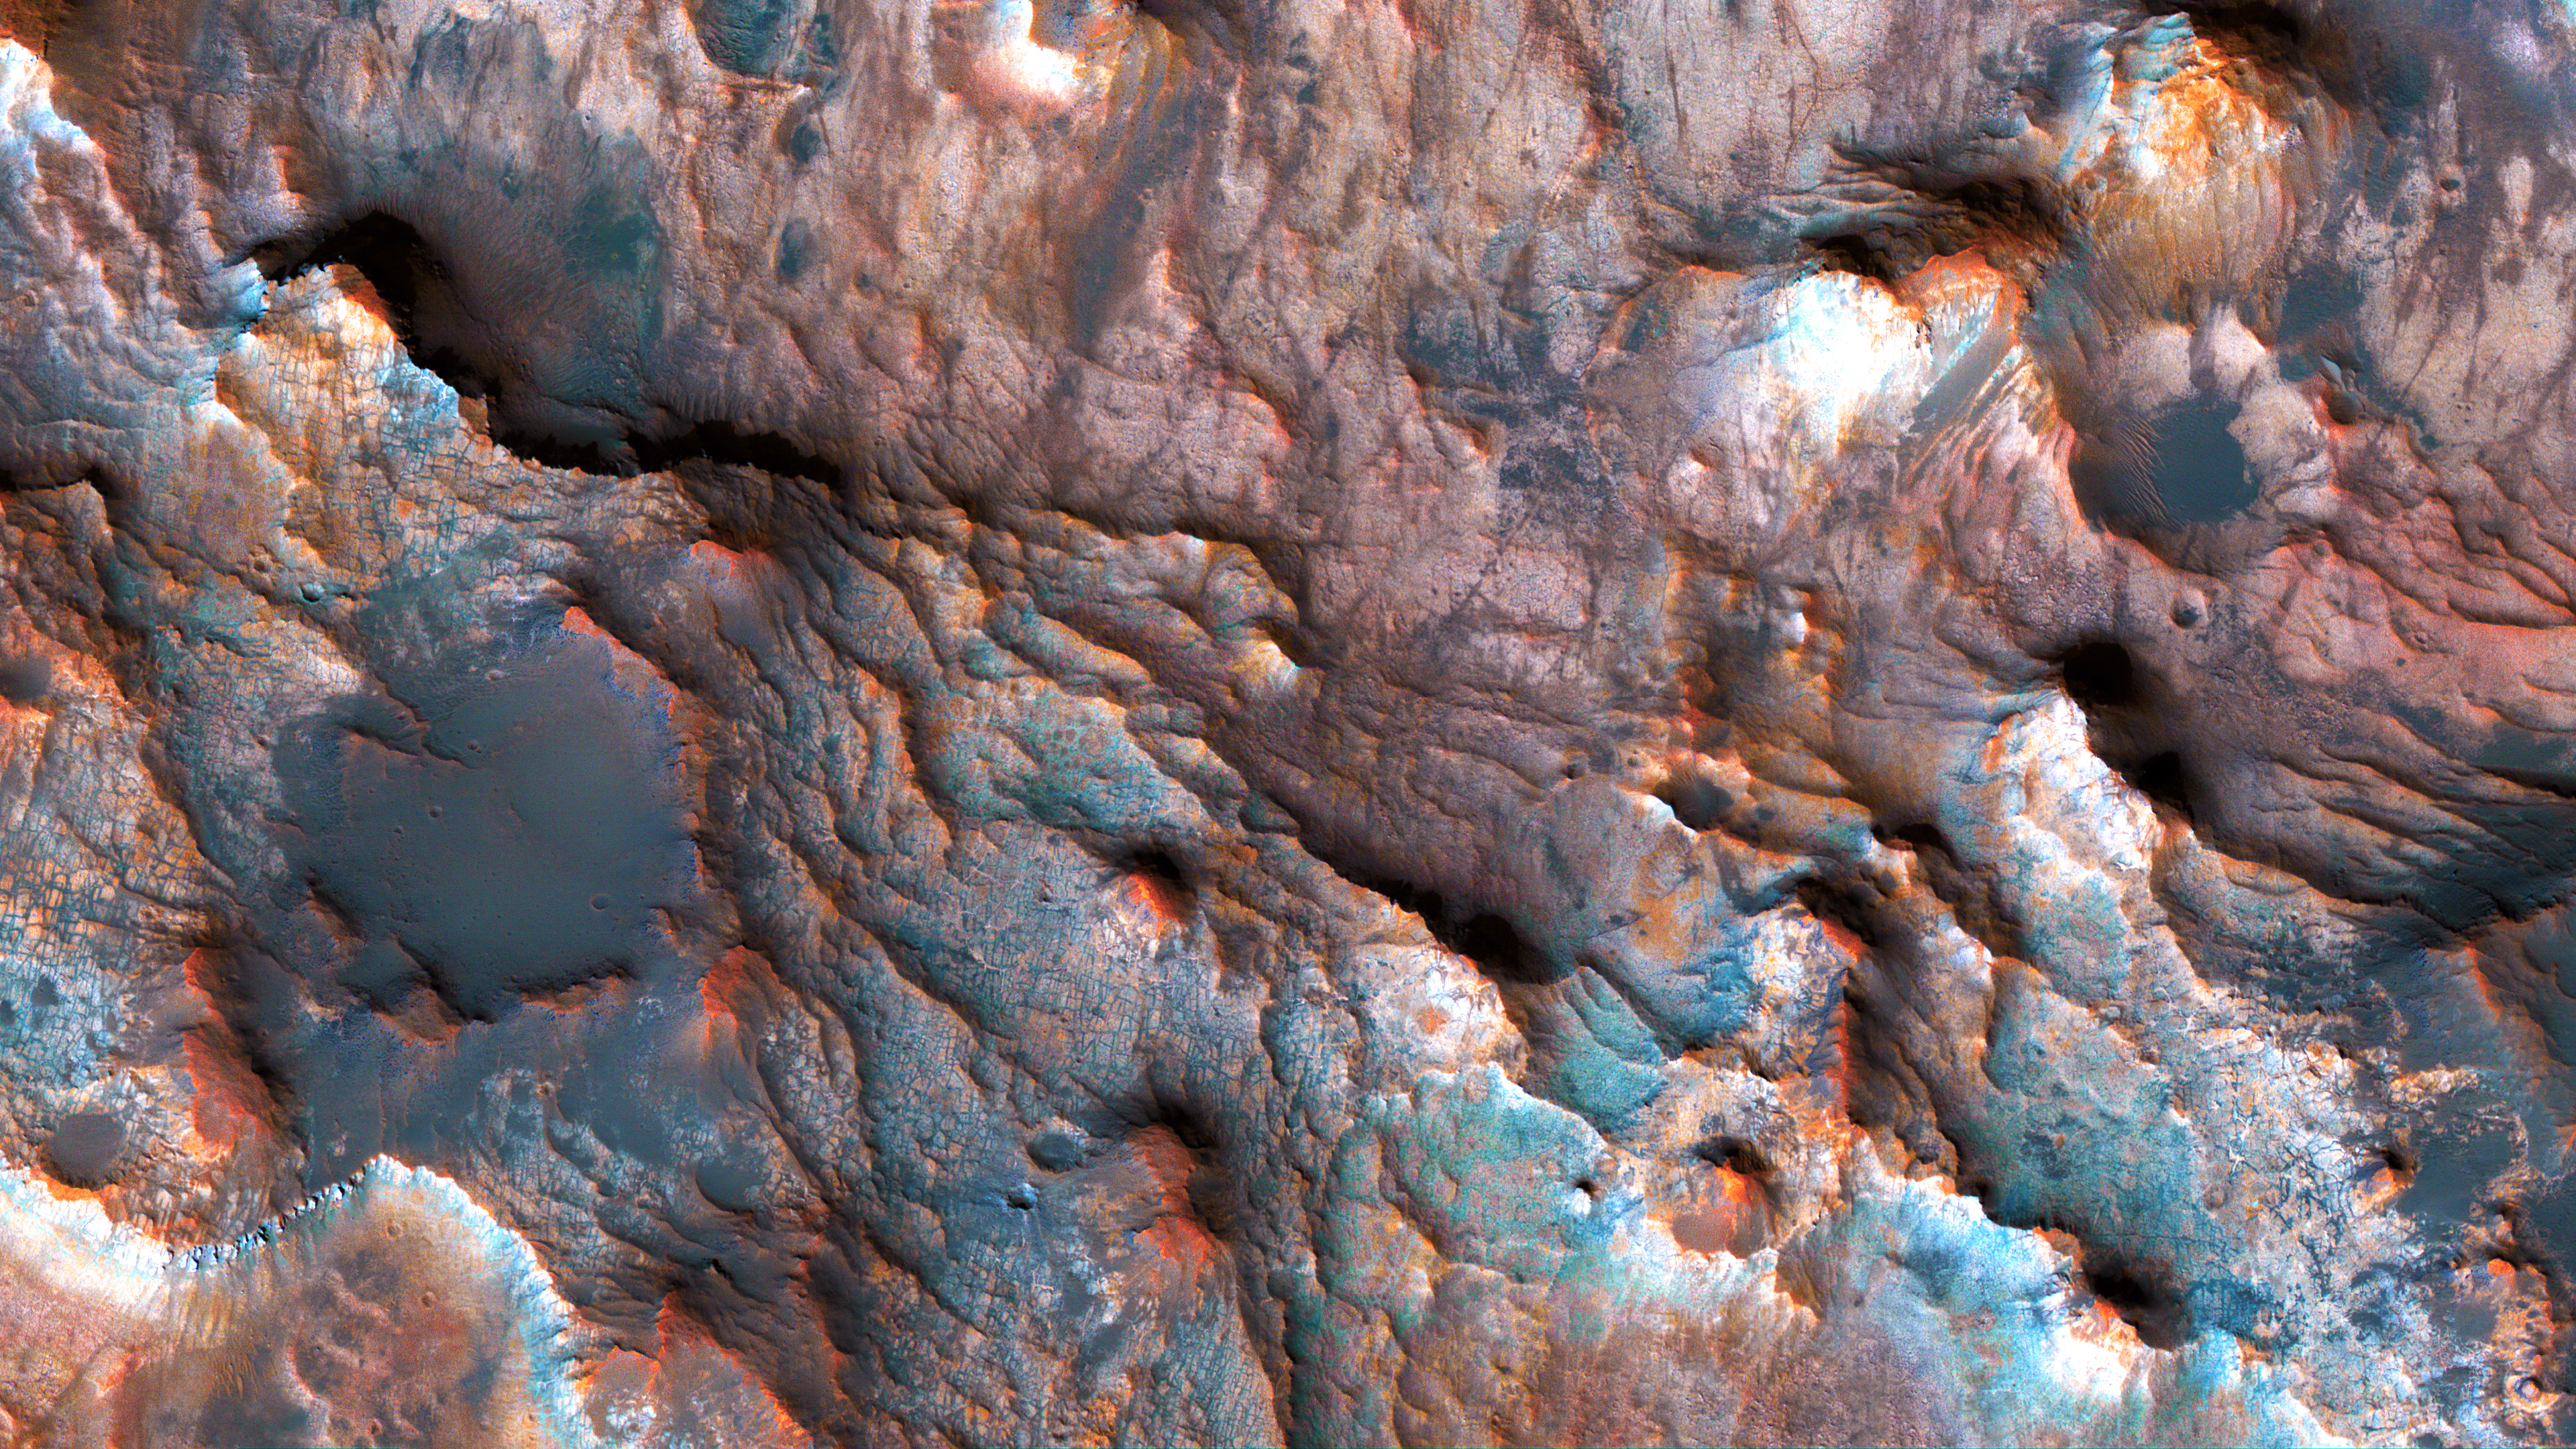 General 3840x2160 Mars NASA landscape dunes closeup